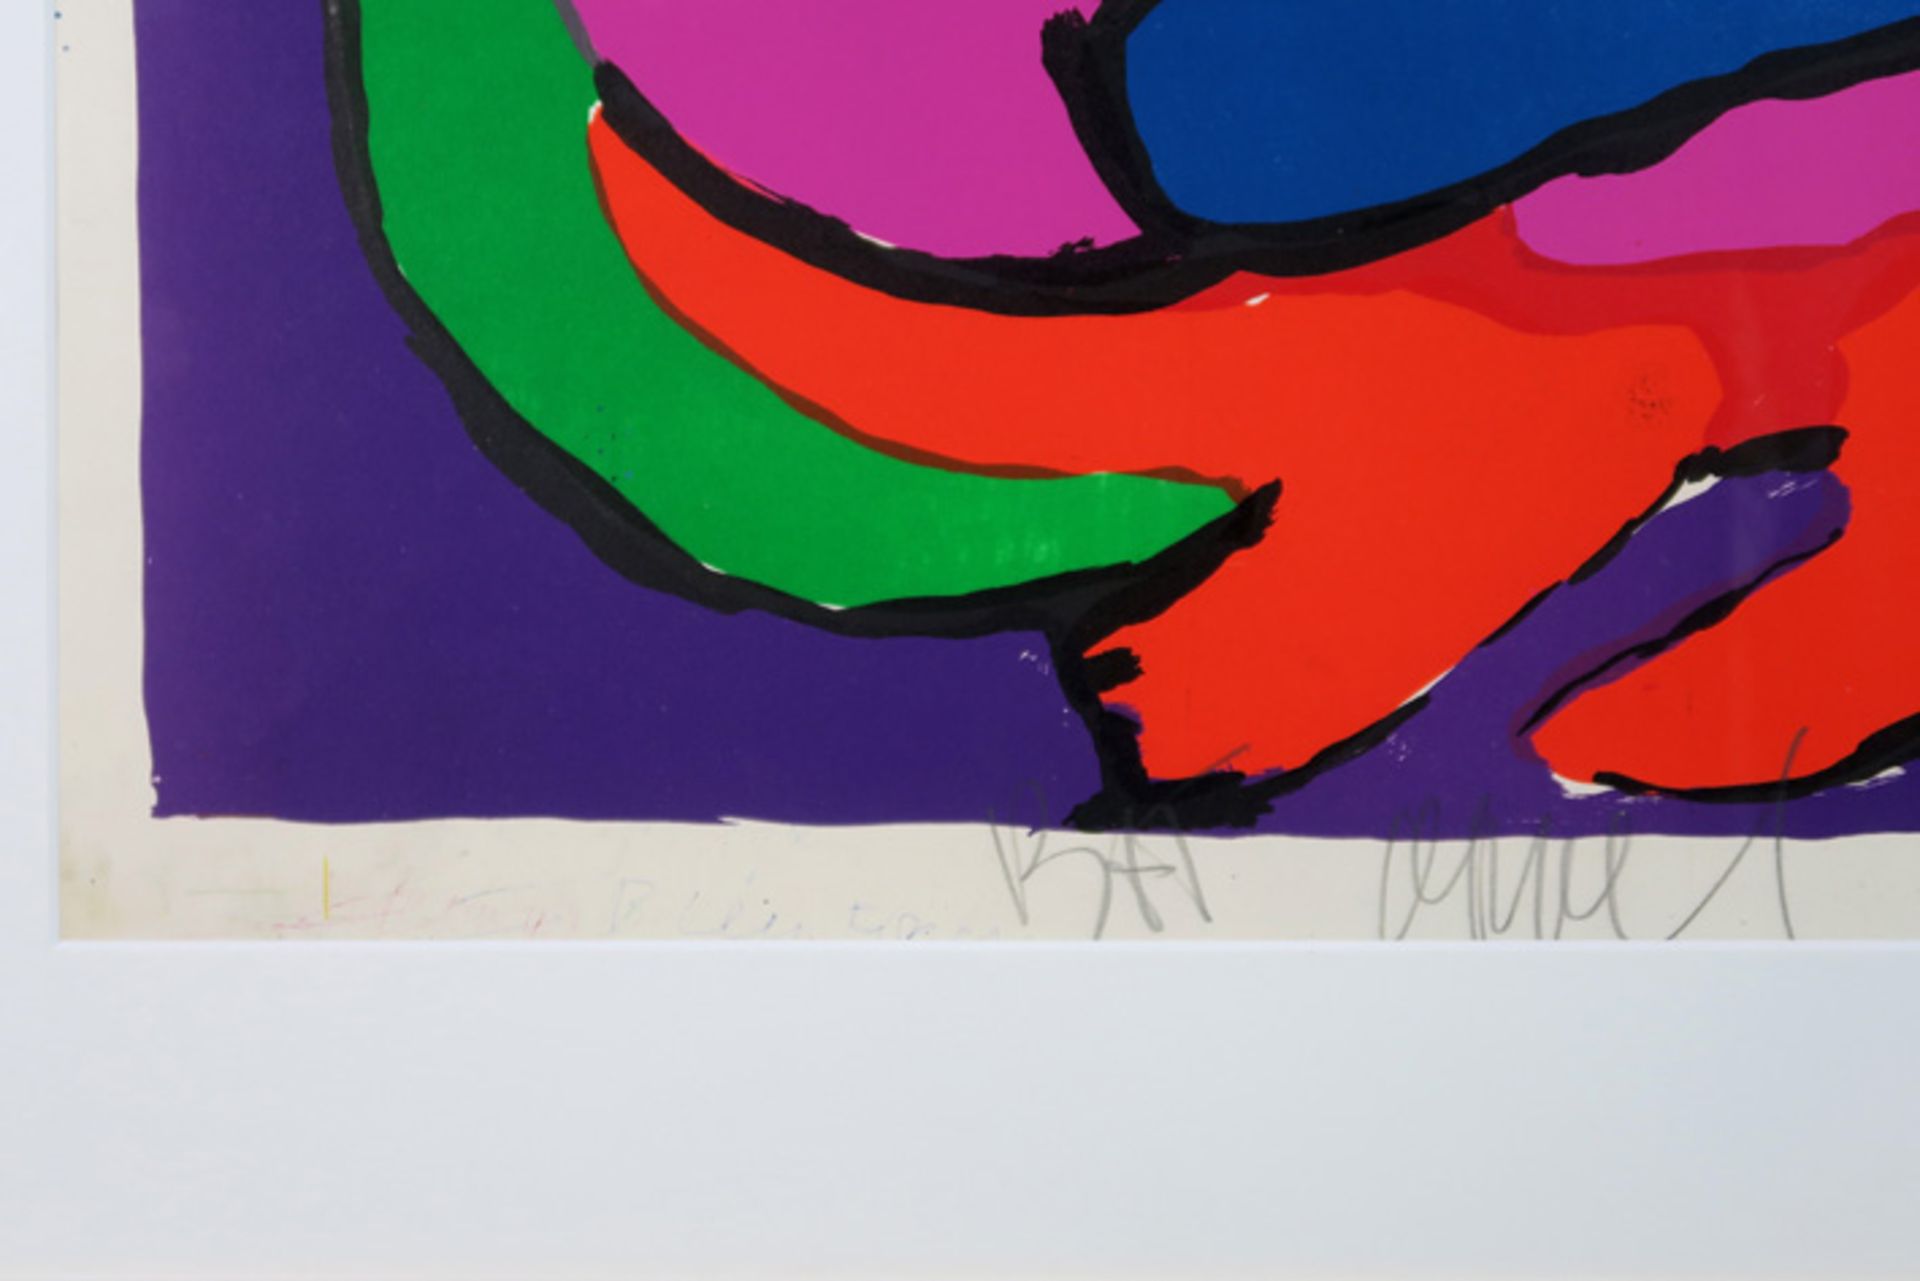 APPEL KAREL (1921 - 2006) kleurlitho met typische compositie - 58 x 84 getekend||20th Cent. Dutch - Image 3 of 3